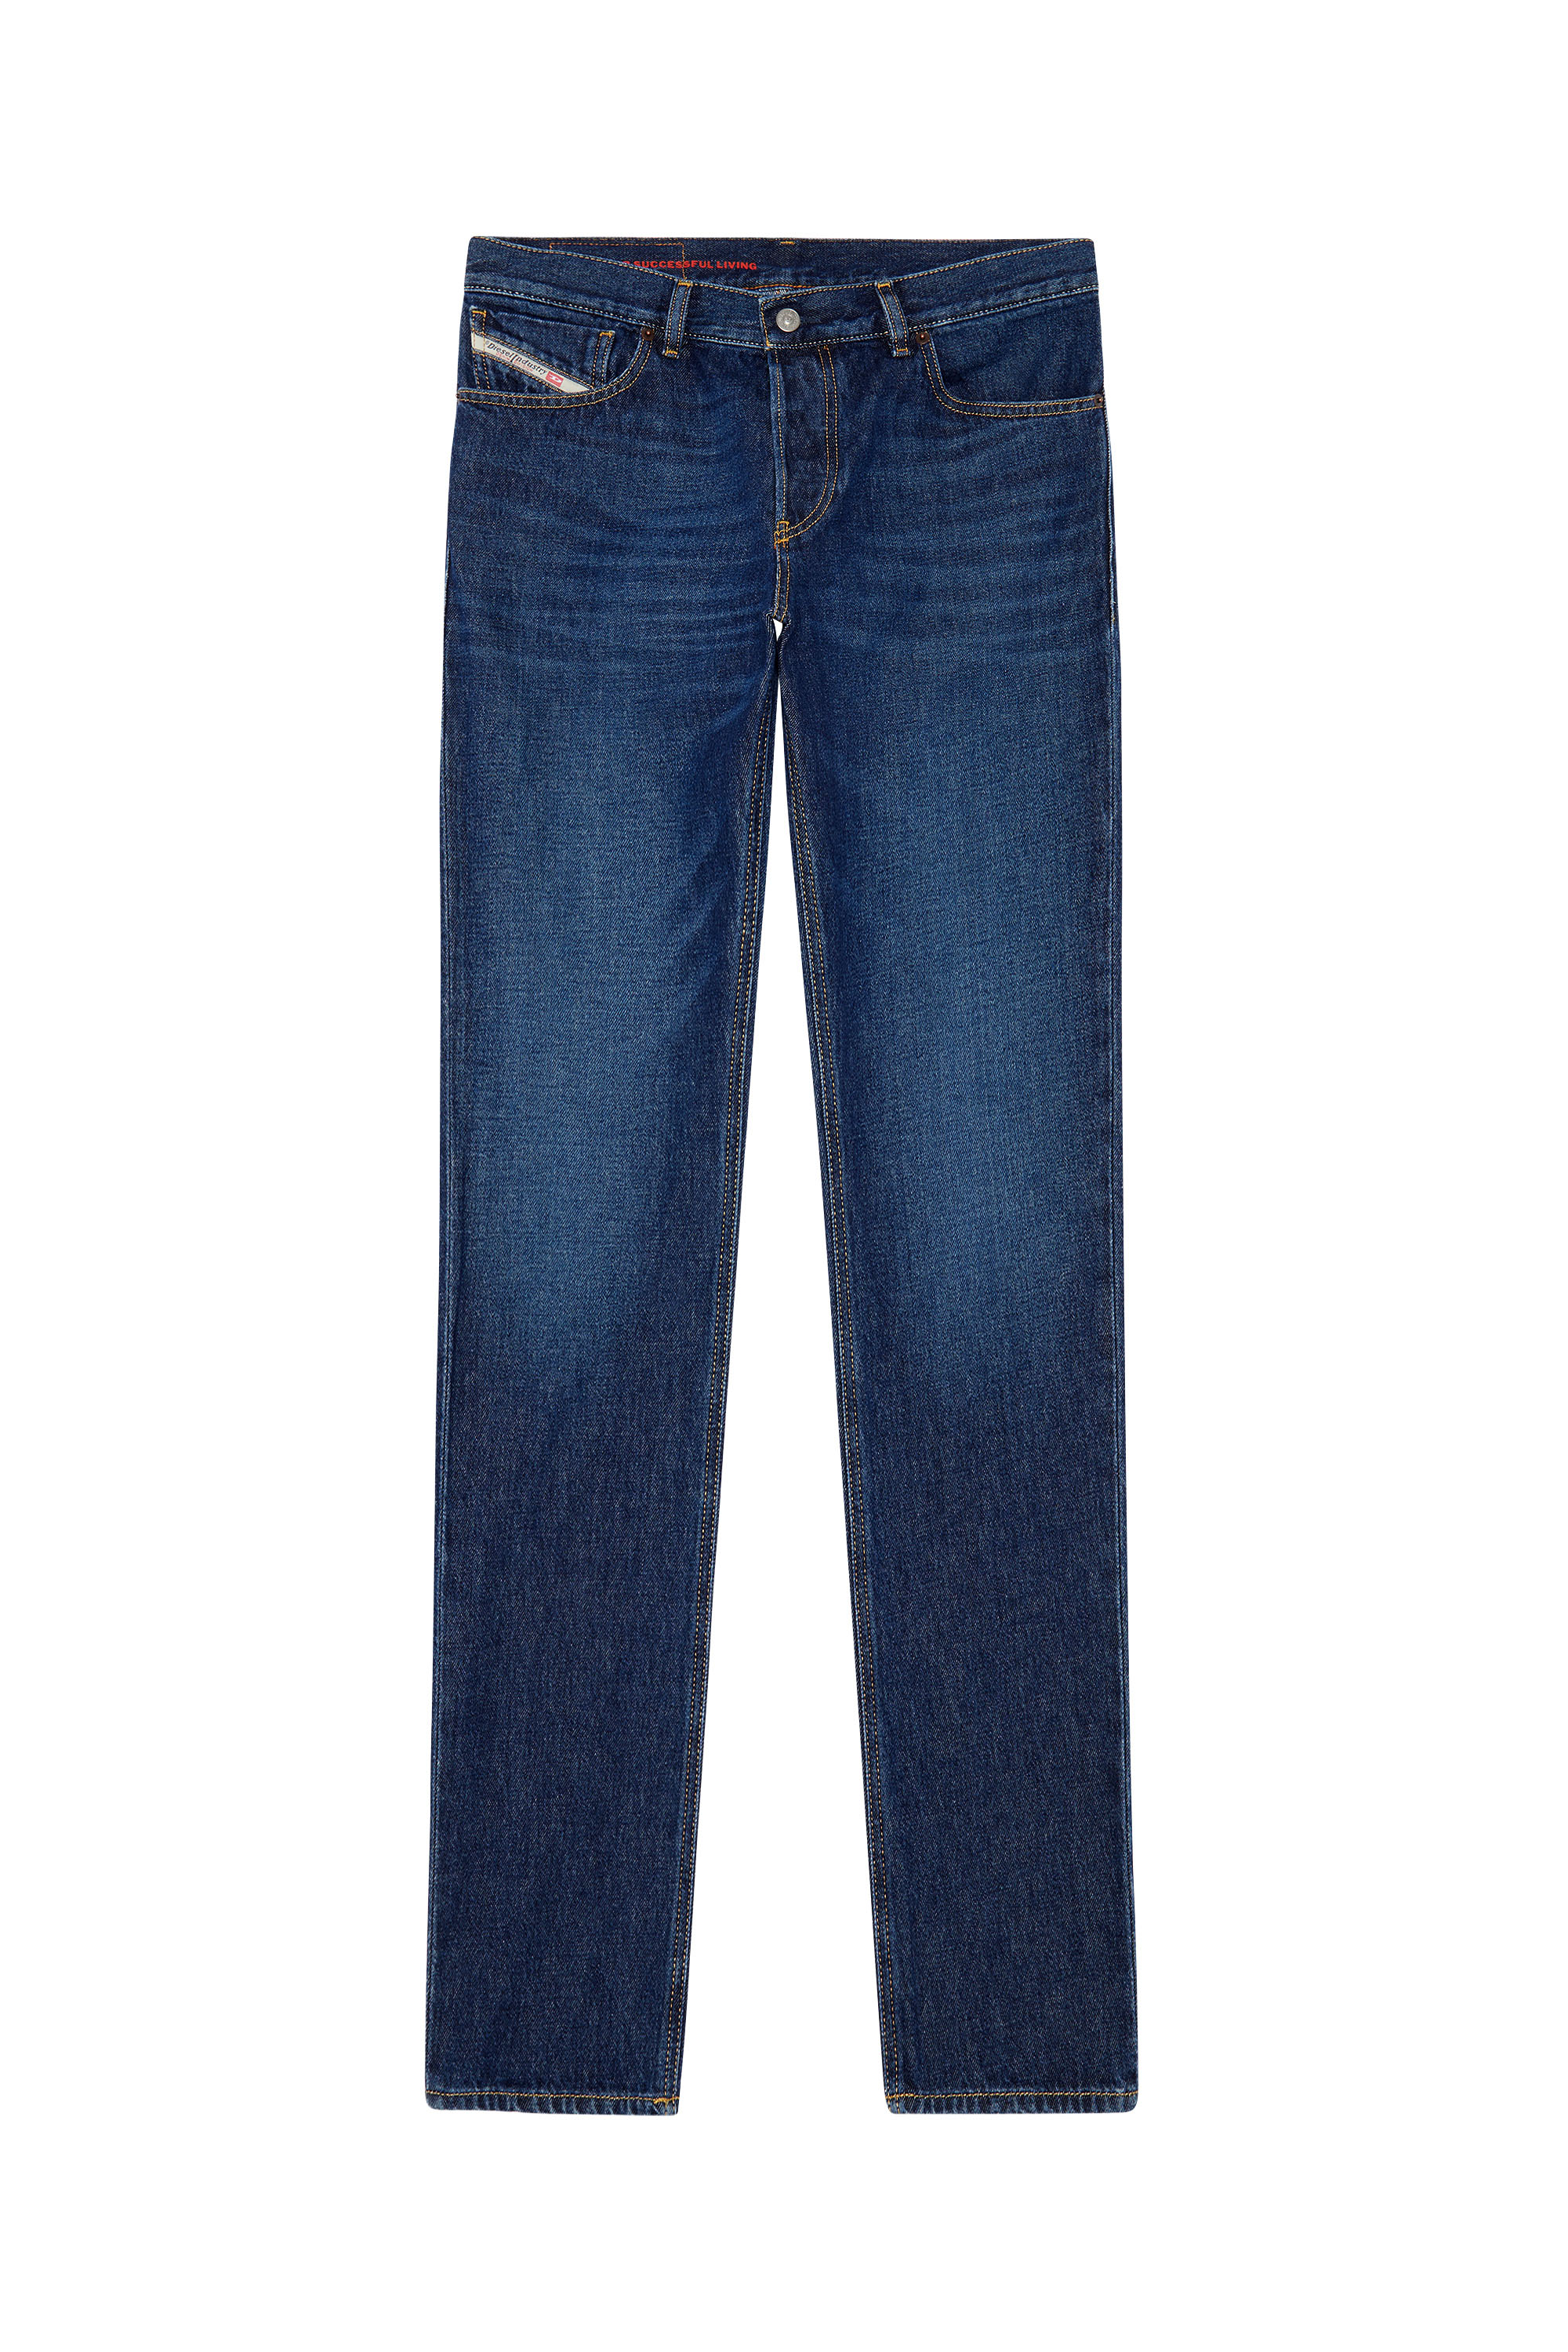 1995 D-SARK 09C03 Straight Jeans, Bleu Foncé - Jeans